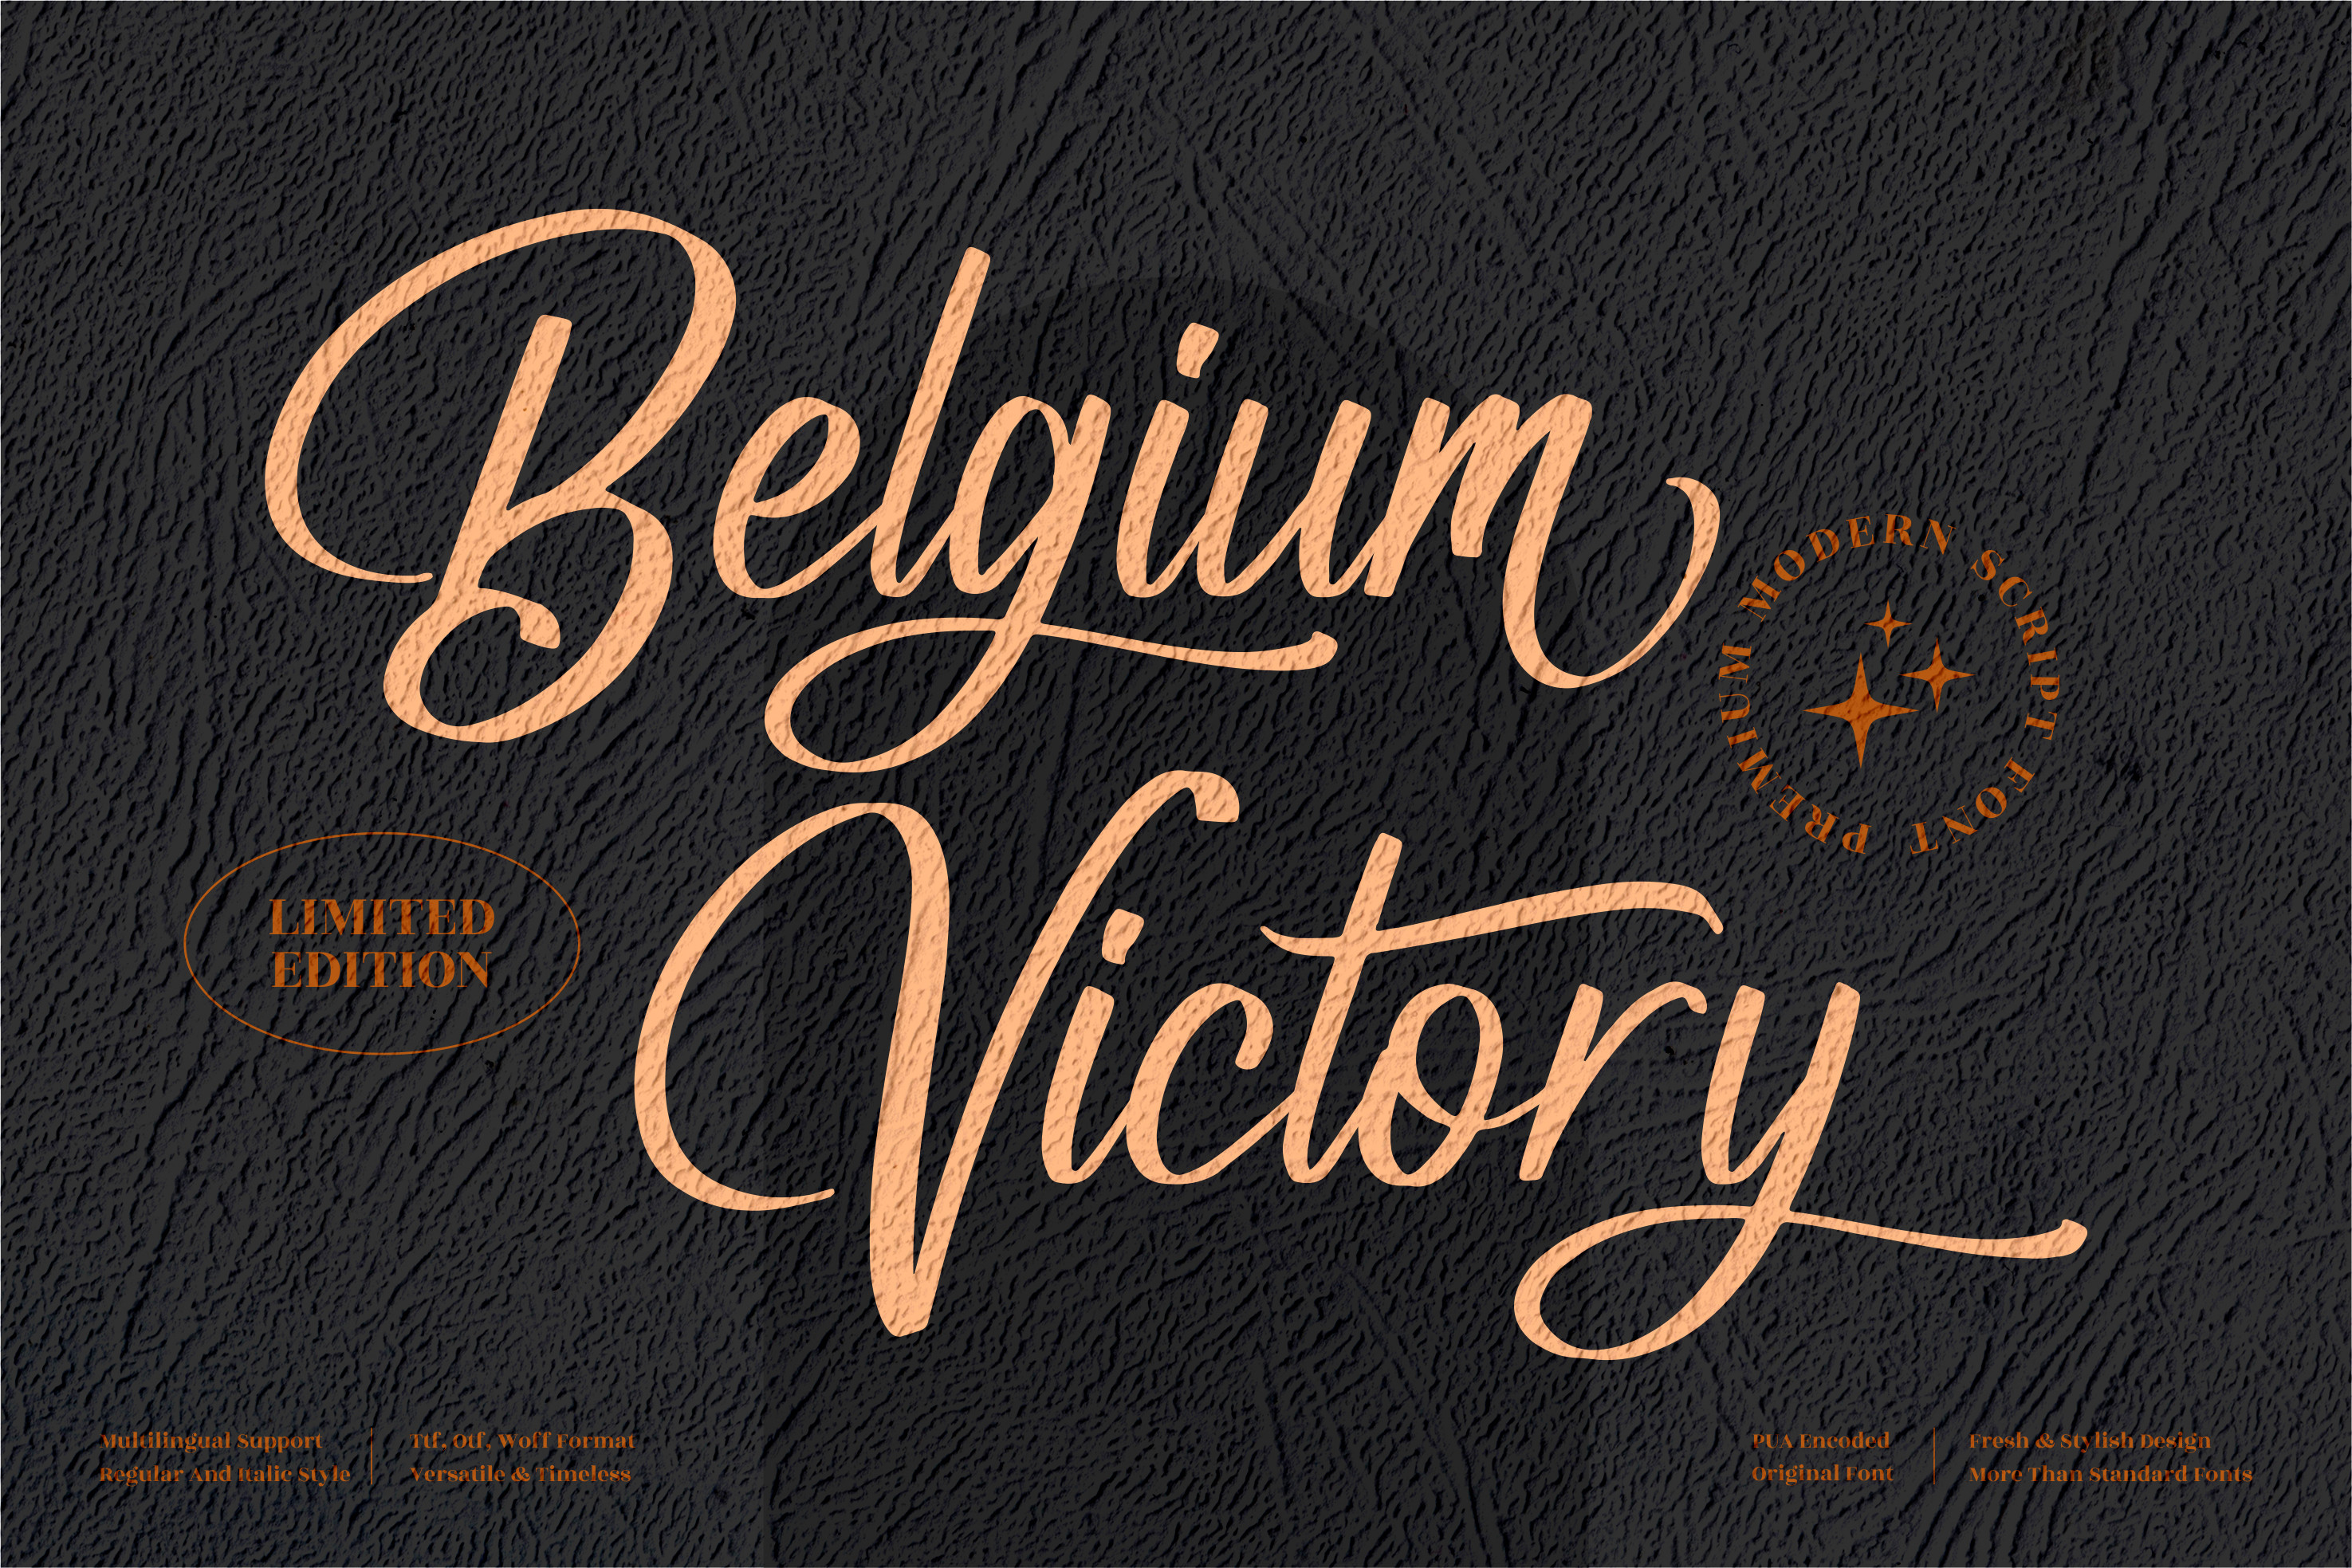 Belgium Victory